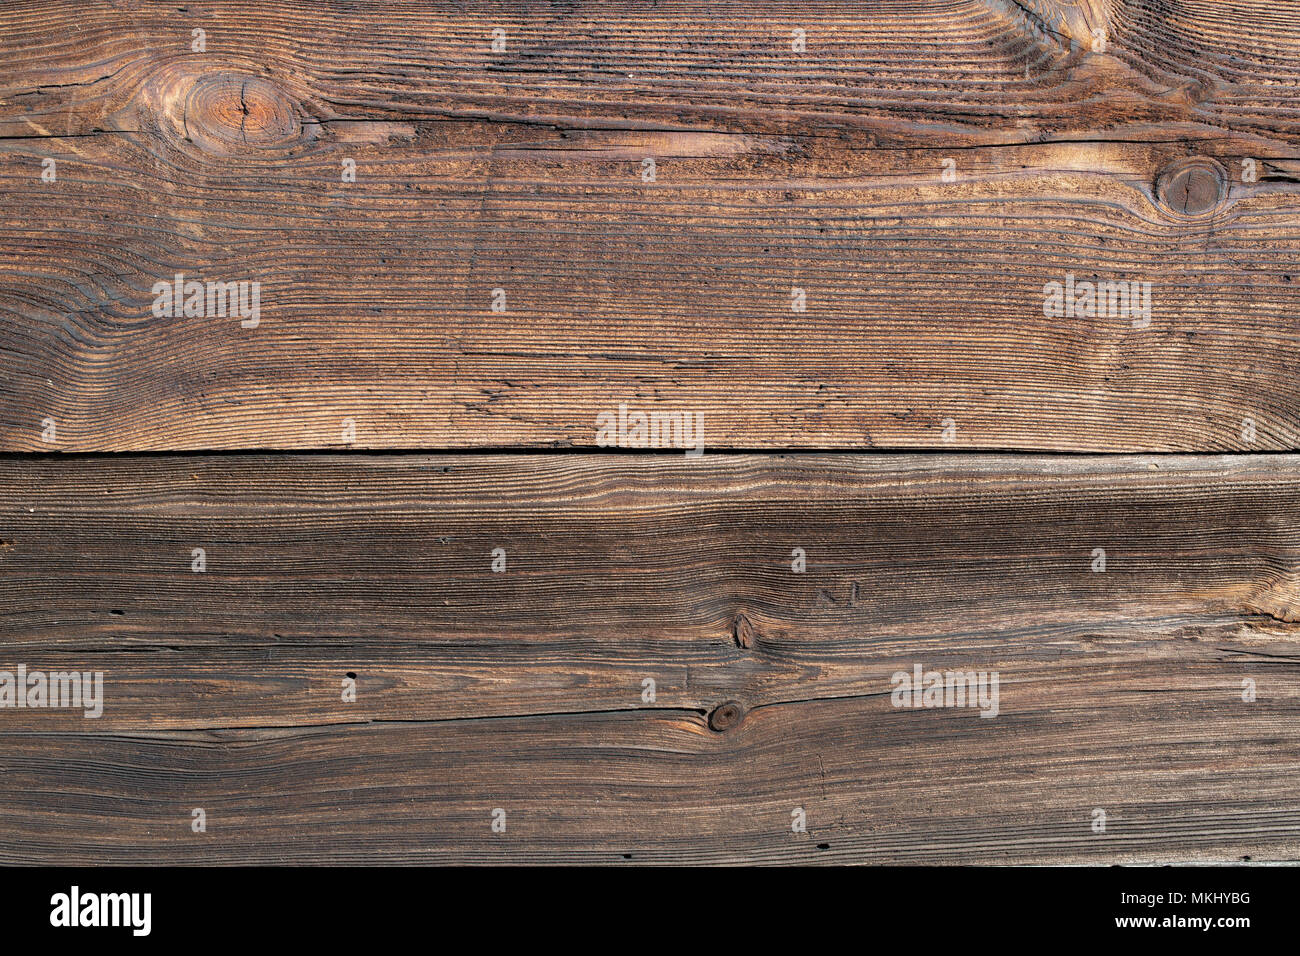 Altes holz Struktur, Holz Muster, Plank, Board. 200 Jahre alte hölzerne Wand. Scharfe, gut sichtbares Wachstum Ringe, parallele Linien und Kurven. Stockfoto